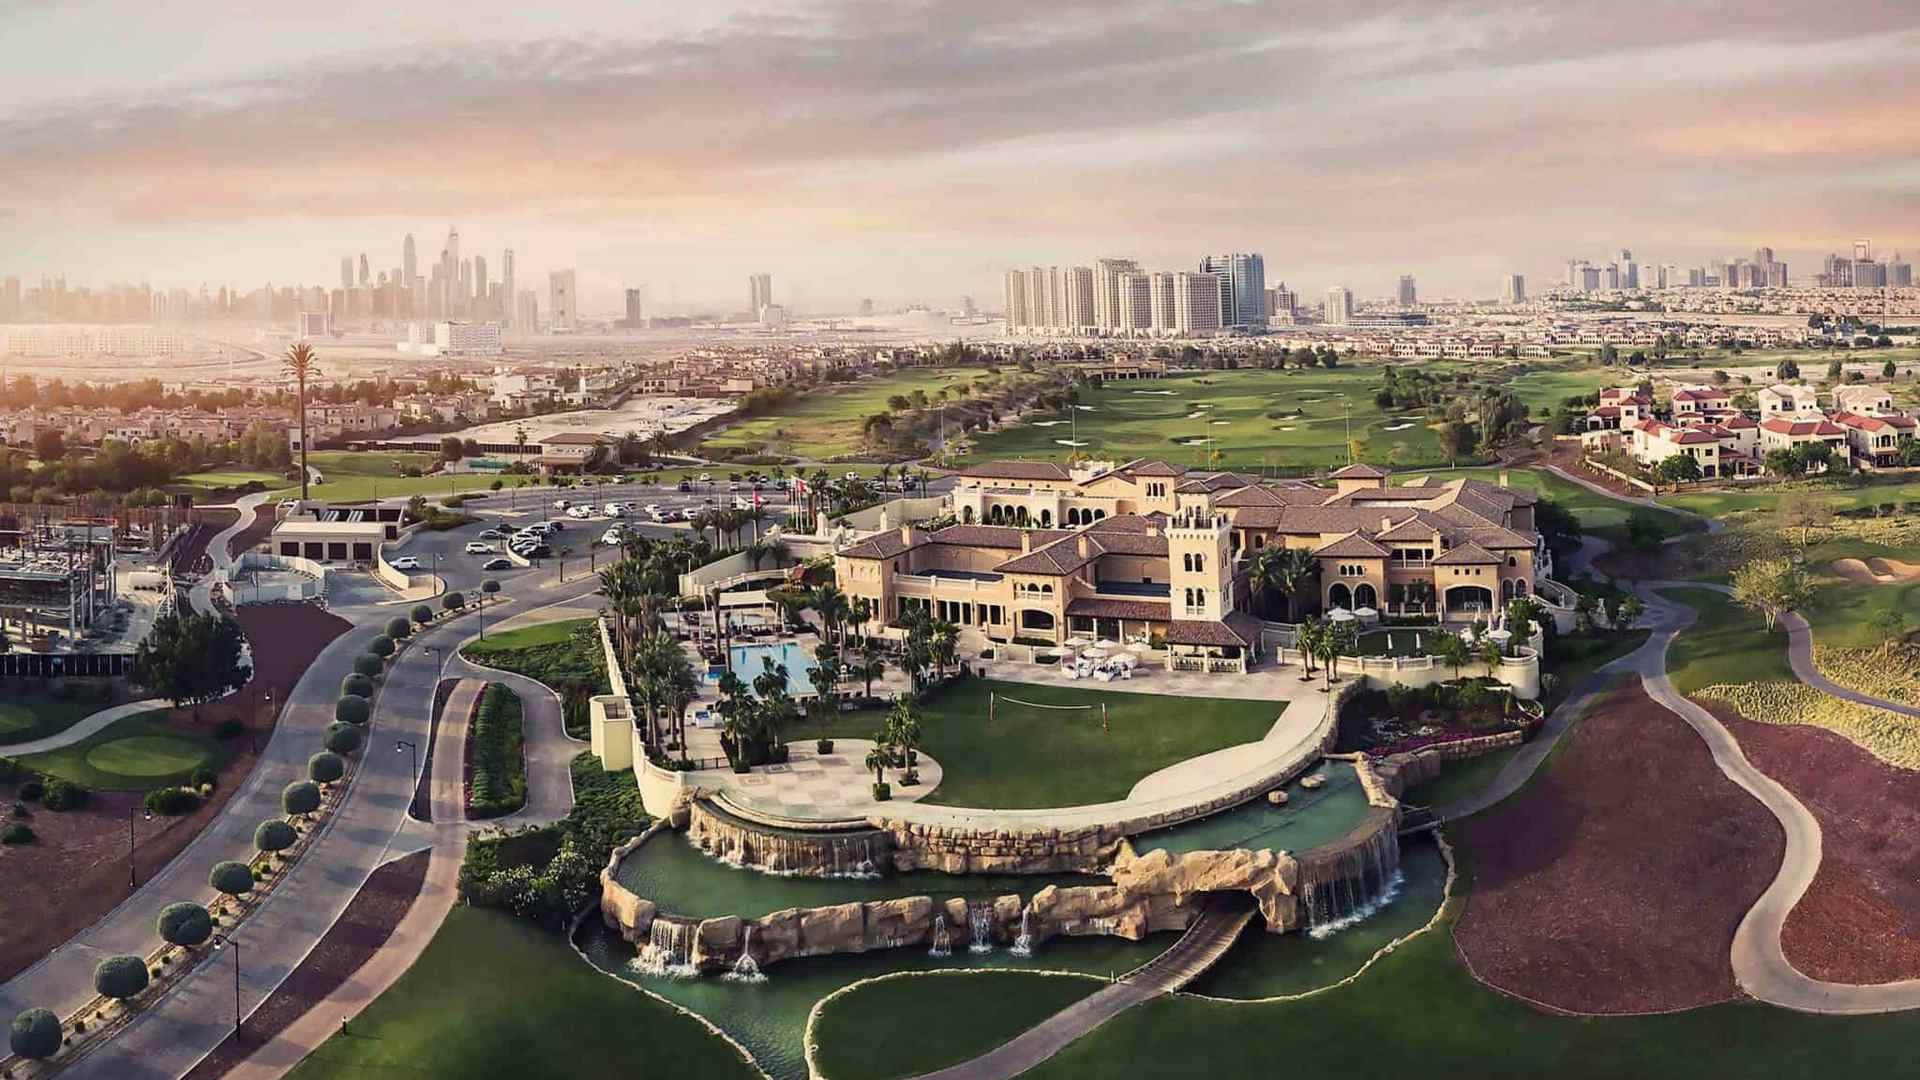 朱美拉高尔夫庄园 (Jumeirah Golf Estate） - 4